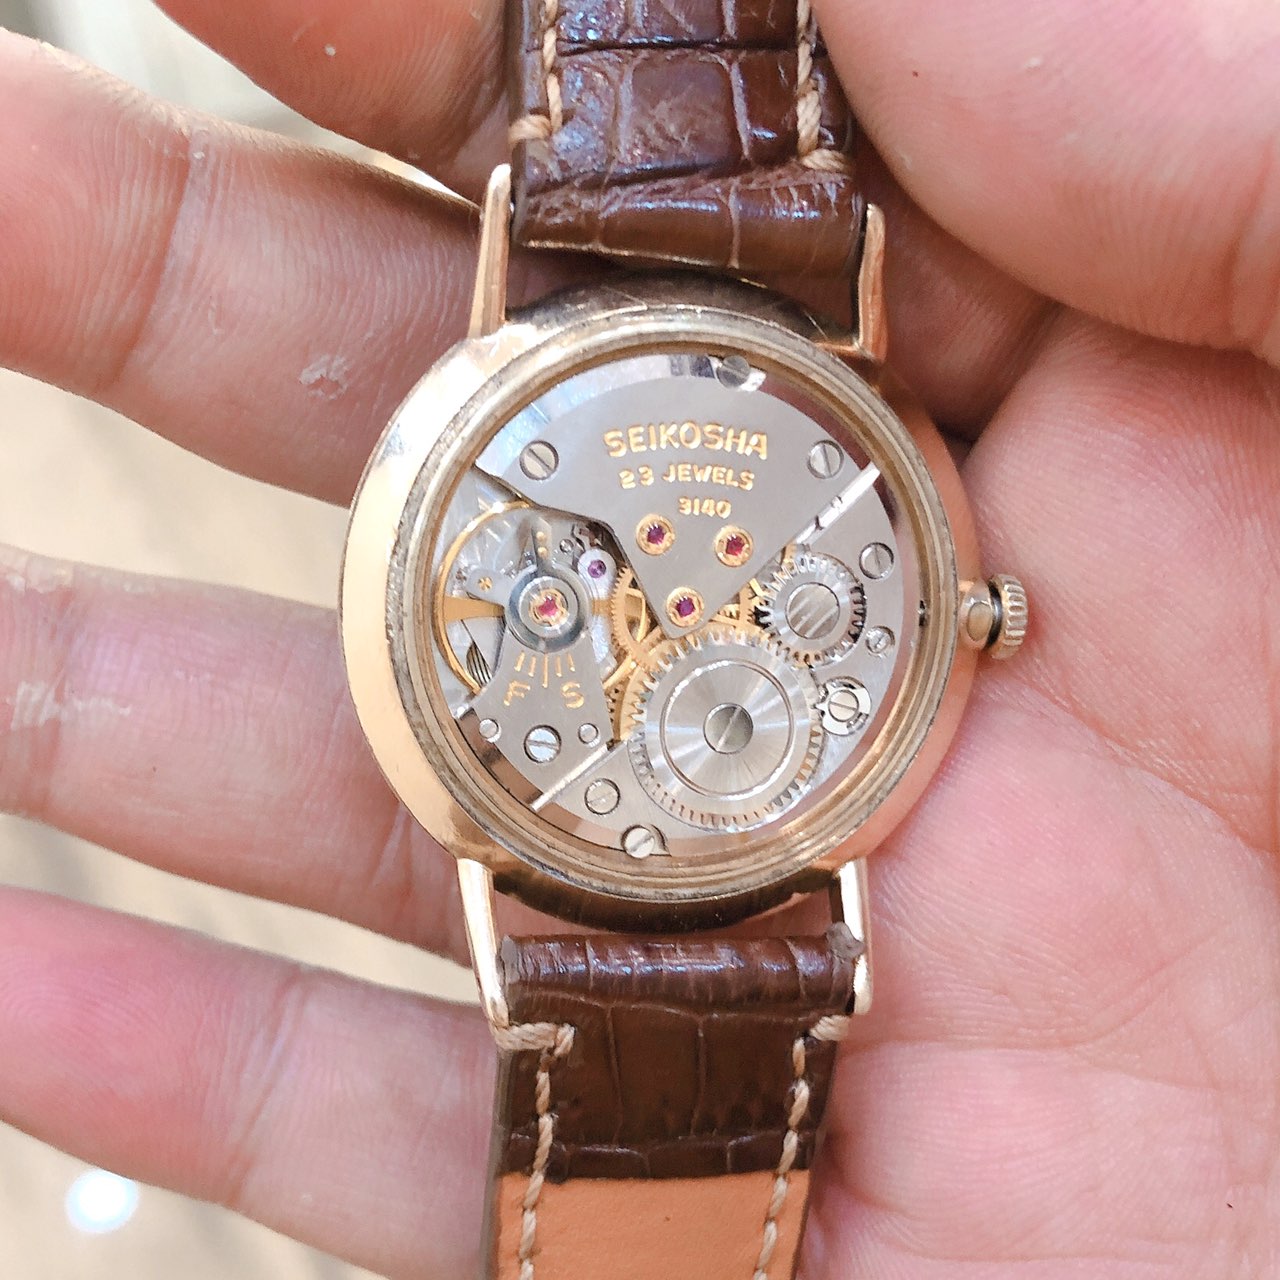 Đồng hồ cổ SEIKO Liner lên dây bọc vàng 14k Goldfilled chính hãng nhật bản